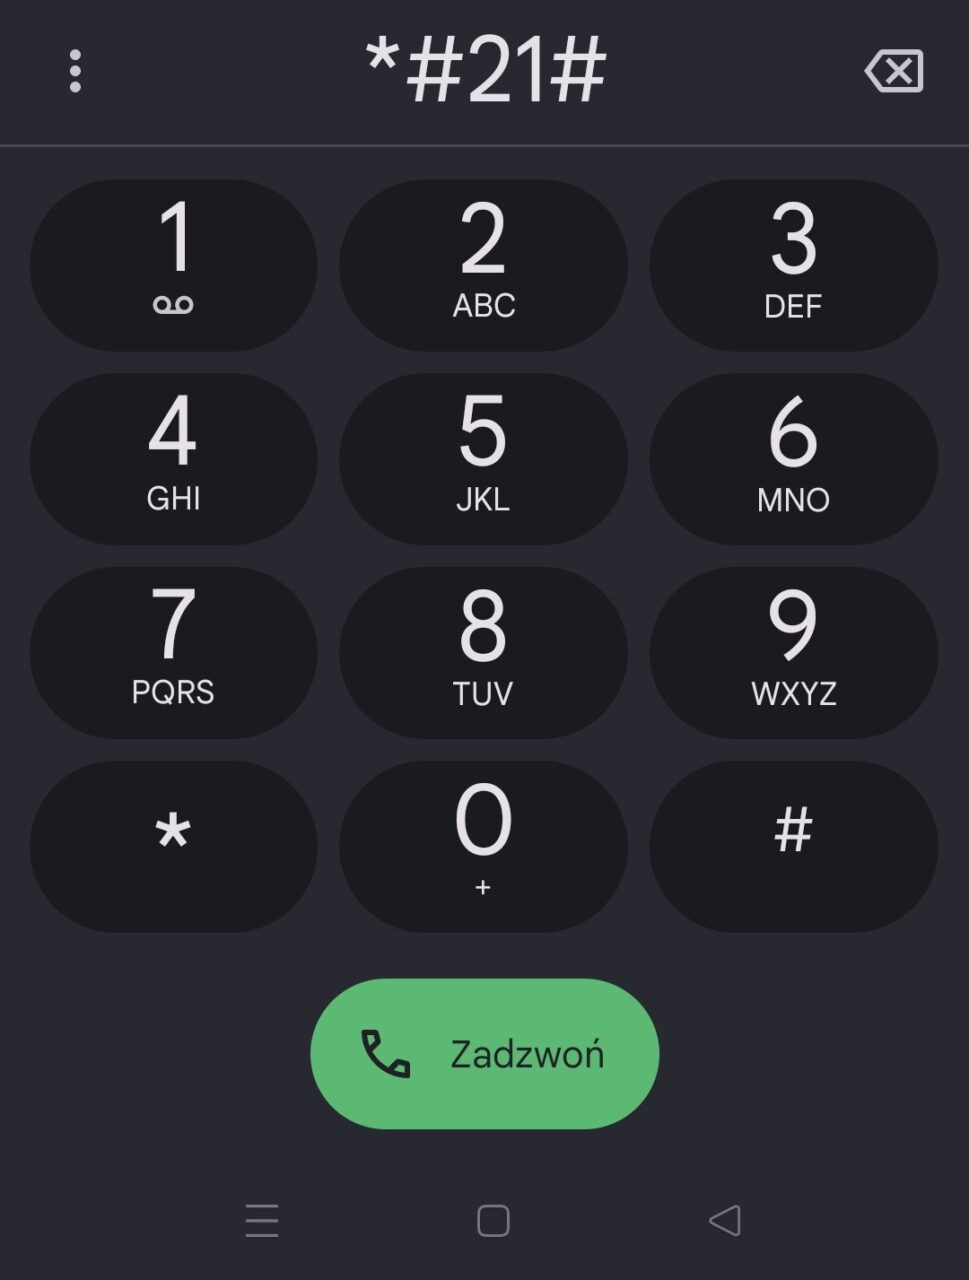 Interfejs klawiatury numerycznej telefonu z cyframi od 1 do 9, gwiazdką, zerem i krzyżykiem. Na górze ekranu wyświetlony jest wpisany kod: *#21#. Przycisk połączenia jest zielony z ikoną słuchawki i napisem "Zadzwoń".